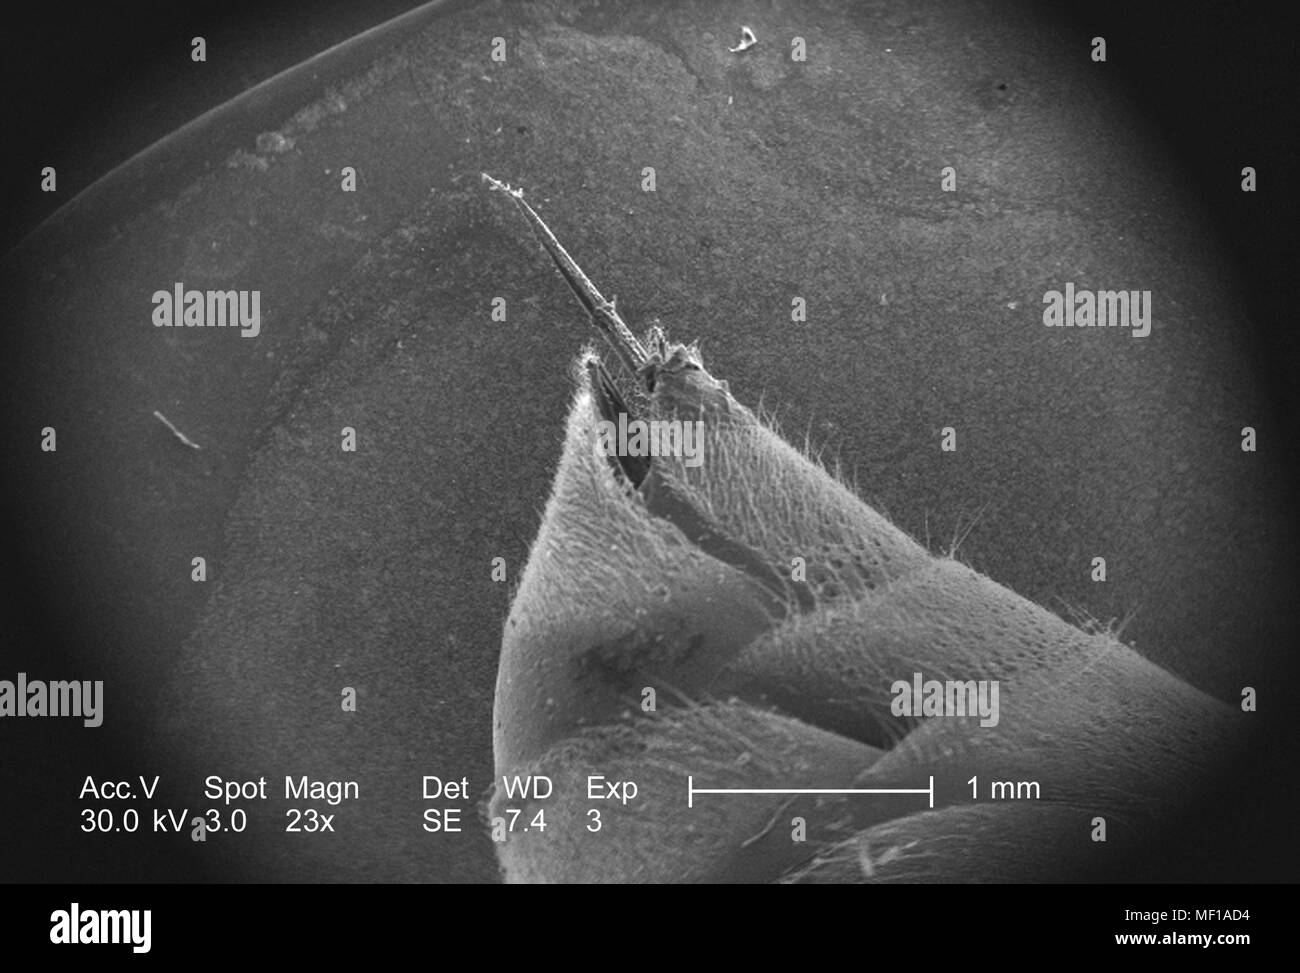 Ultrastrutturali dettagli morfologiche di un misterioso hymenopteran insetto apparato stinger, raffigurato in 23x di scansione ingrandita al microscopio elettronico (SEM) immagine, 2005. Immagine cortesia di centri per il controllo delle malattie (CDC) / Janice Haney Carr. () Foto Stock